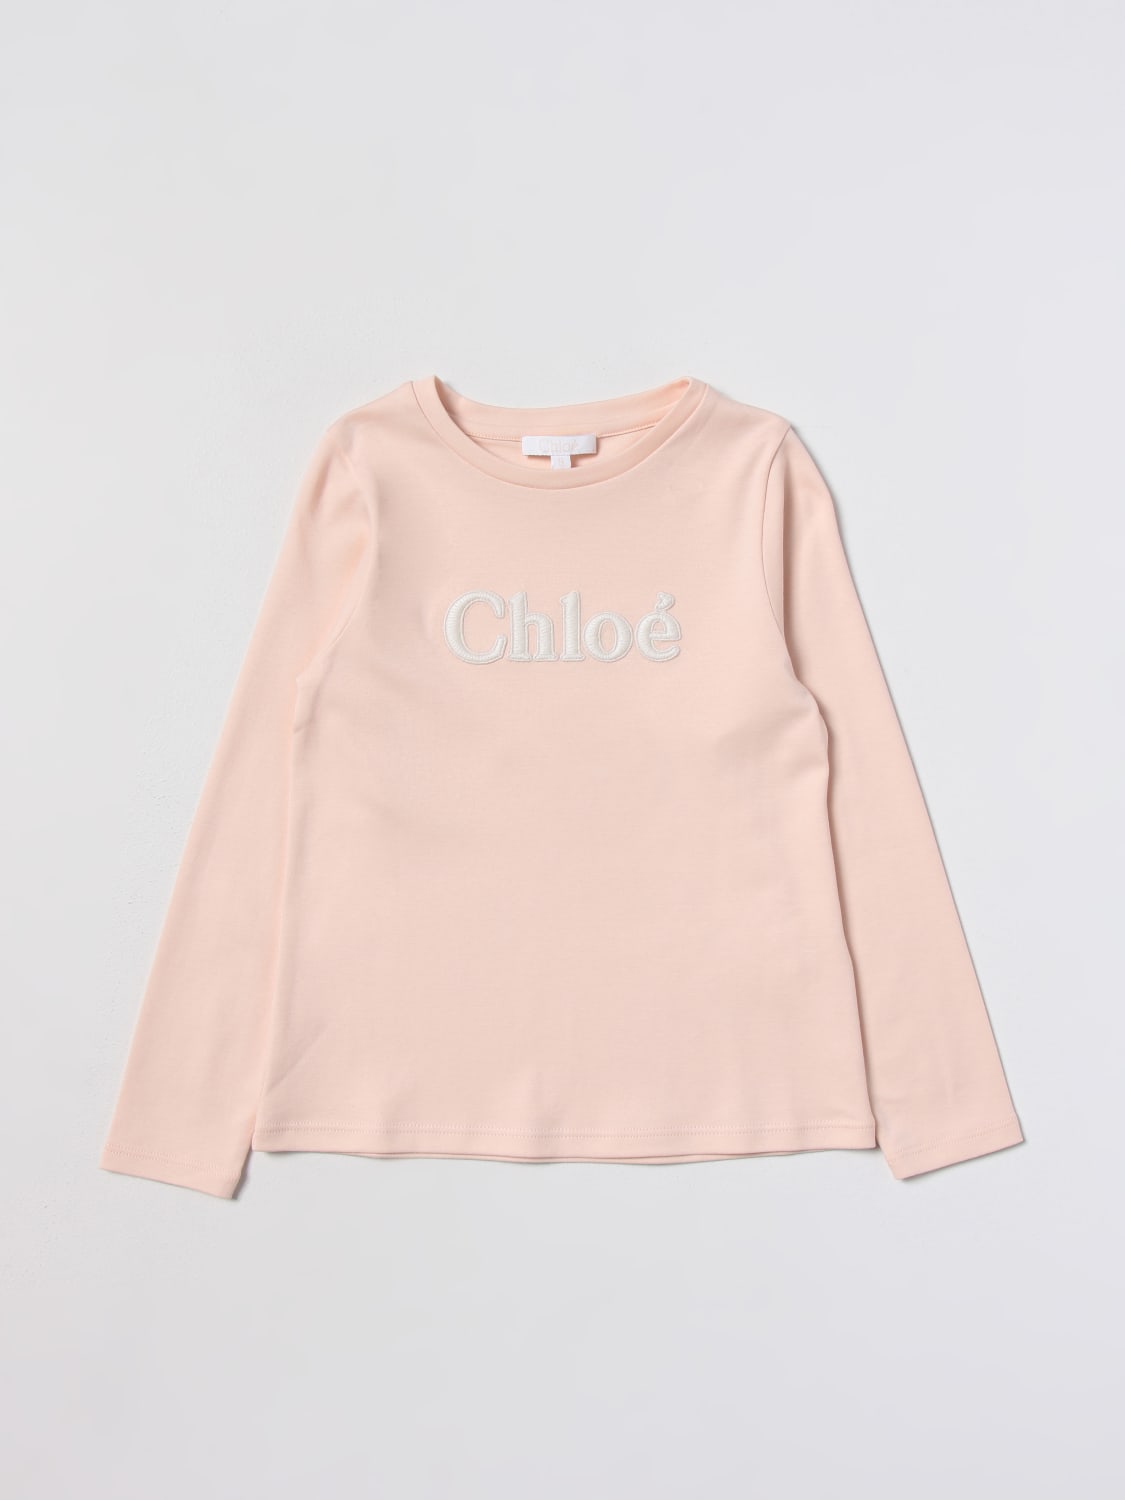 CHLOÉ: t-shirt for girl - Pink | Chloé t-shirt C15E26 online at